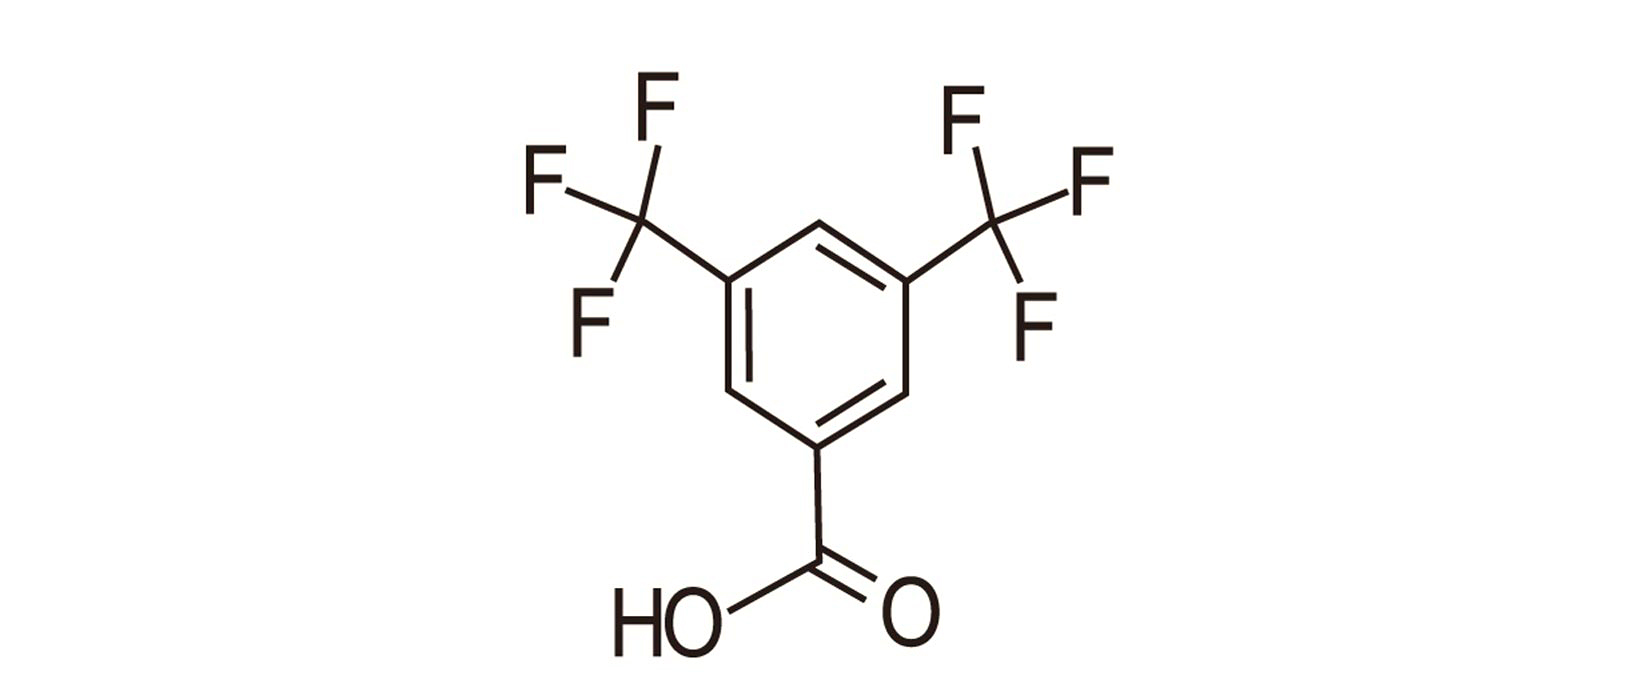 3,5-Bis(trifluoromethyl) benzoic acid